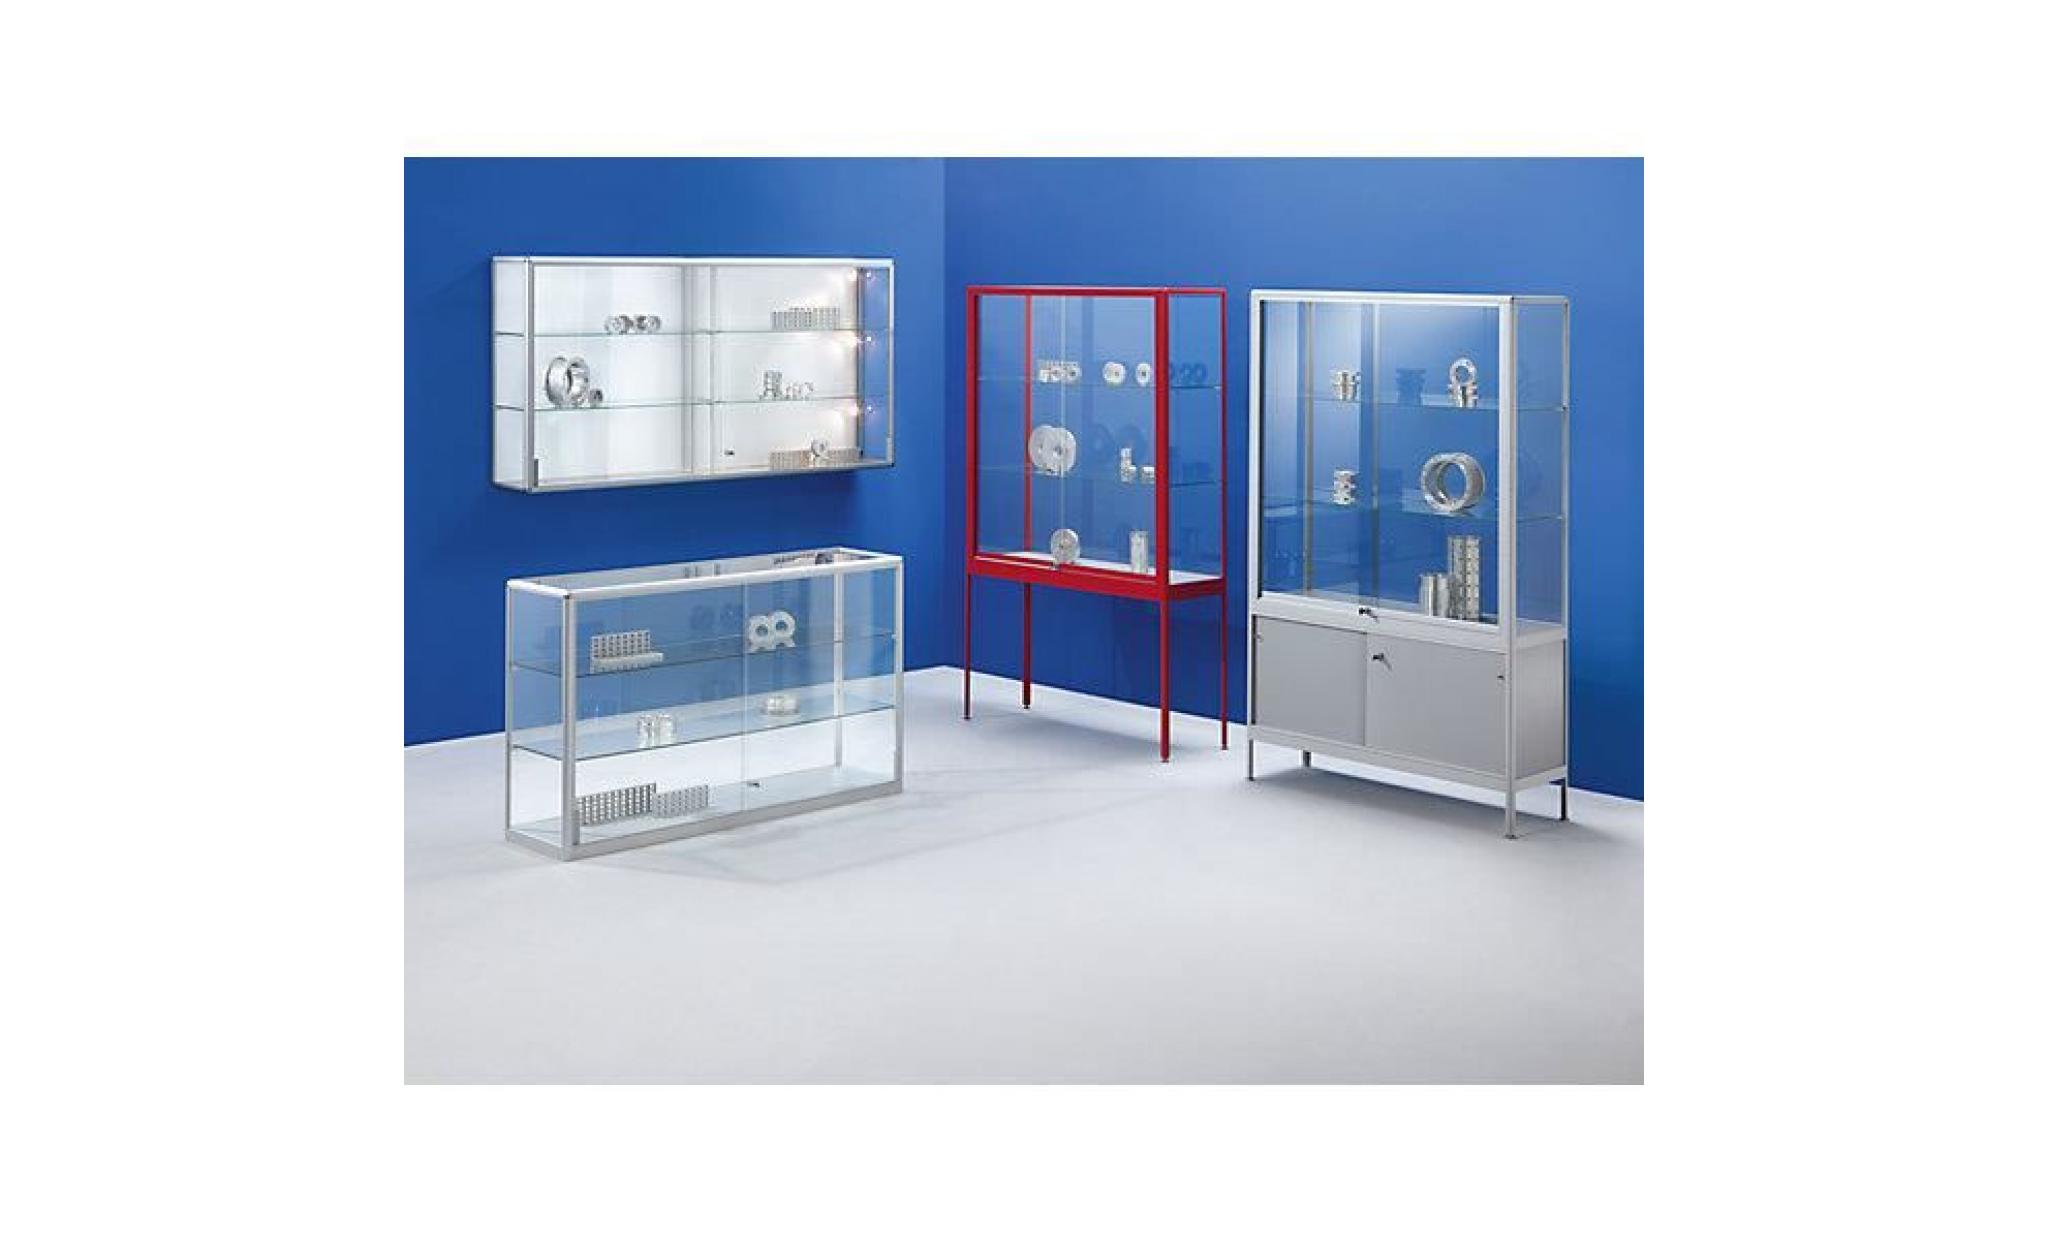 office akktiv vitrine   modèle vitrine compartimentée   largeur 500 mm, 1 porte pivotante   armoire à vitrine armoires à vitrine pas cher